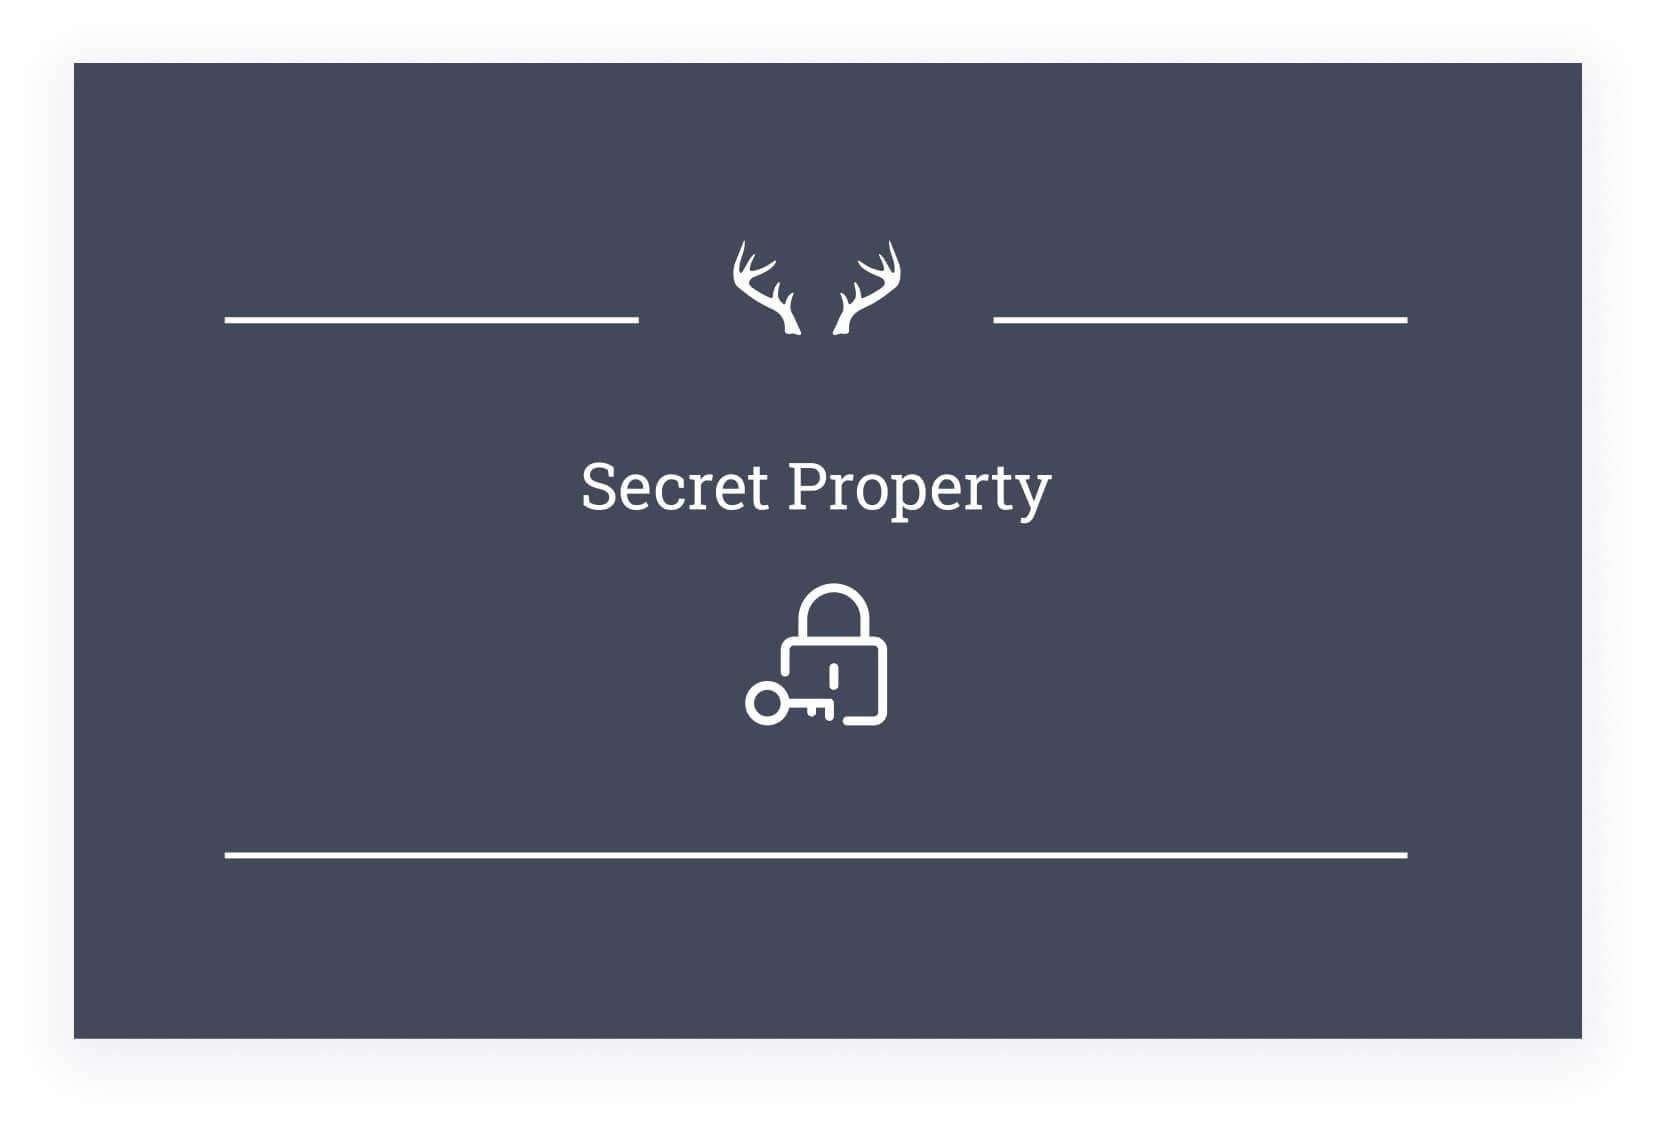 secret-property-groß(1)